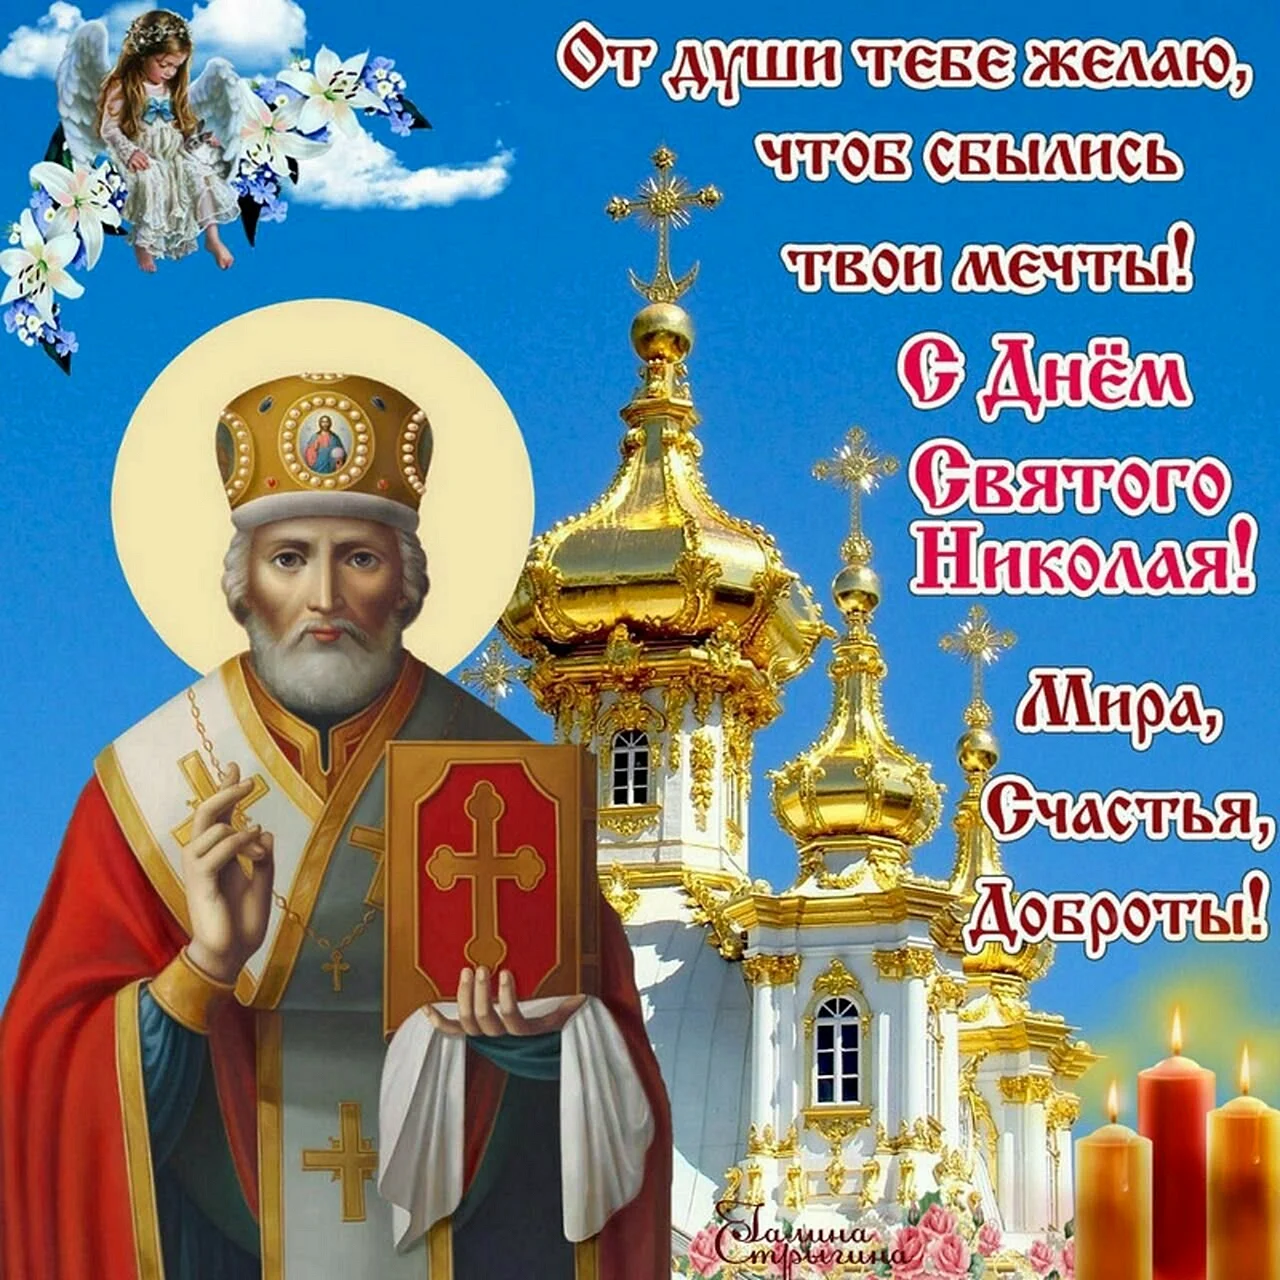 Открытки с днем Николая святителя Николая Чудотворца